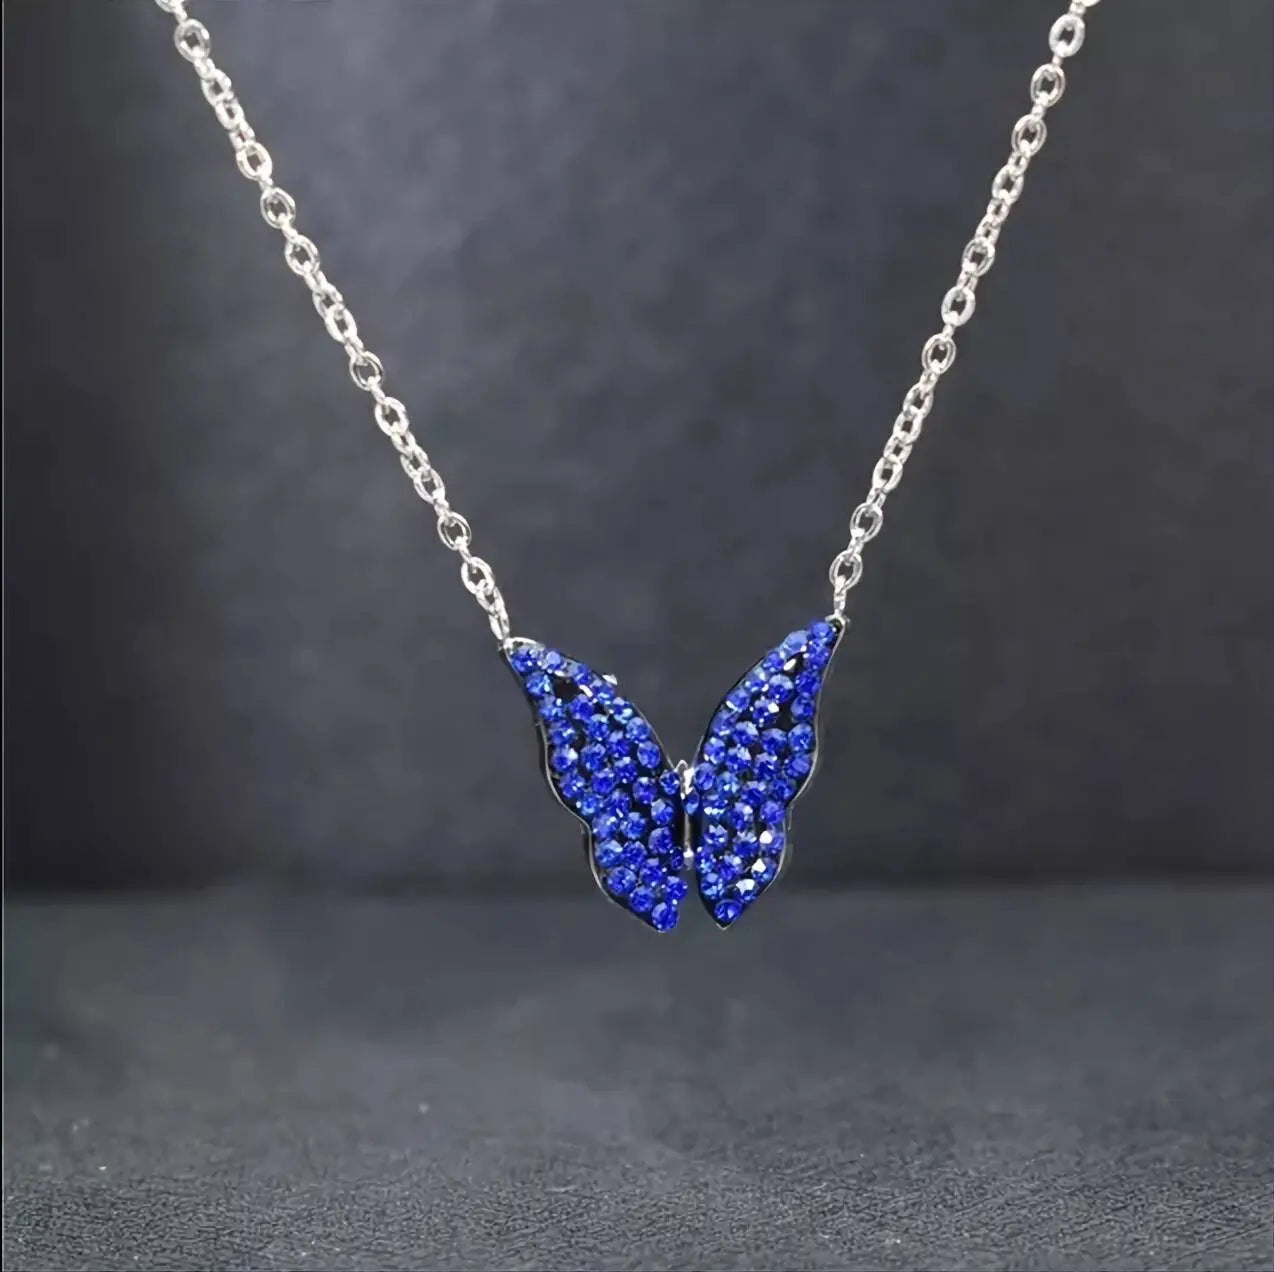 Minimalist Blue Black Butterfly Necklace, 925 Sterling Silver Pendant Necklace, Minimalist dainty Necklace, Jewellery for women JettsJewelers